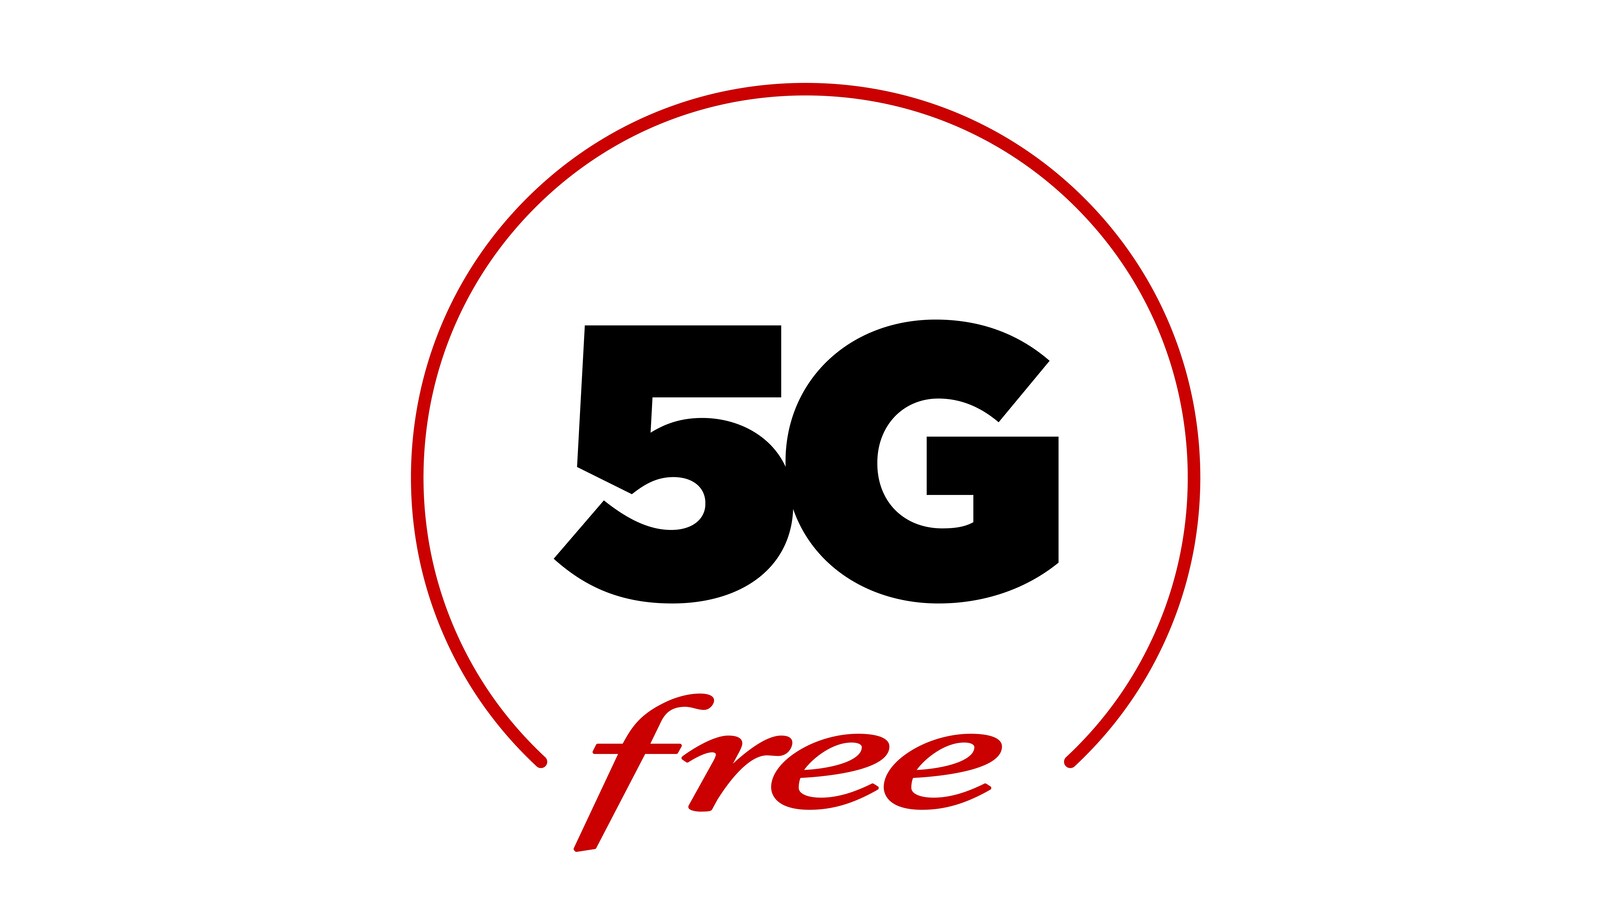 5G Free : forfaits, prix, villes et zones couvertes, notre guide pour tout savoir